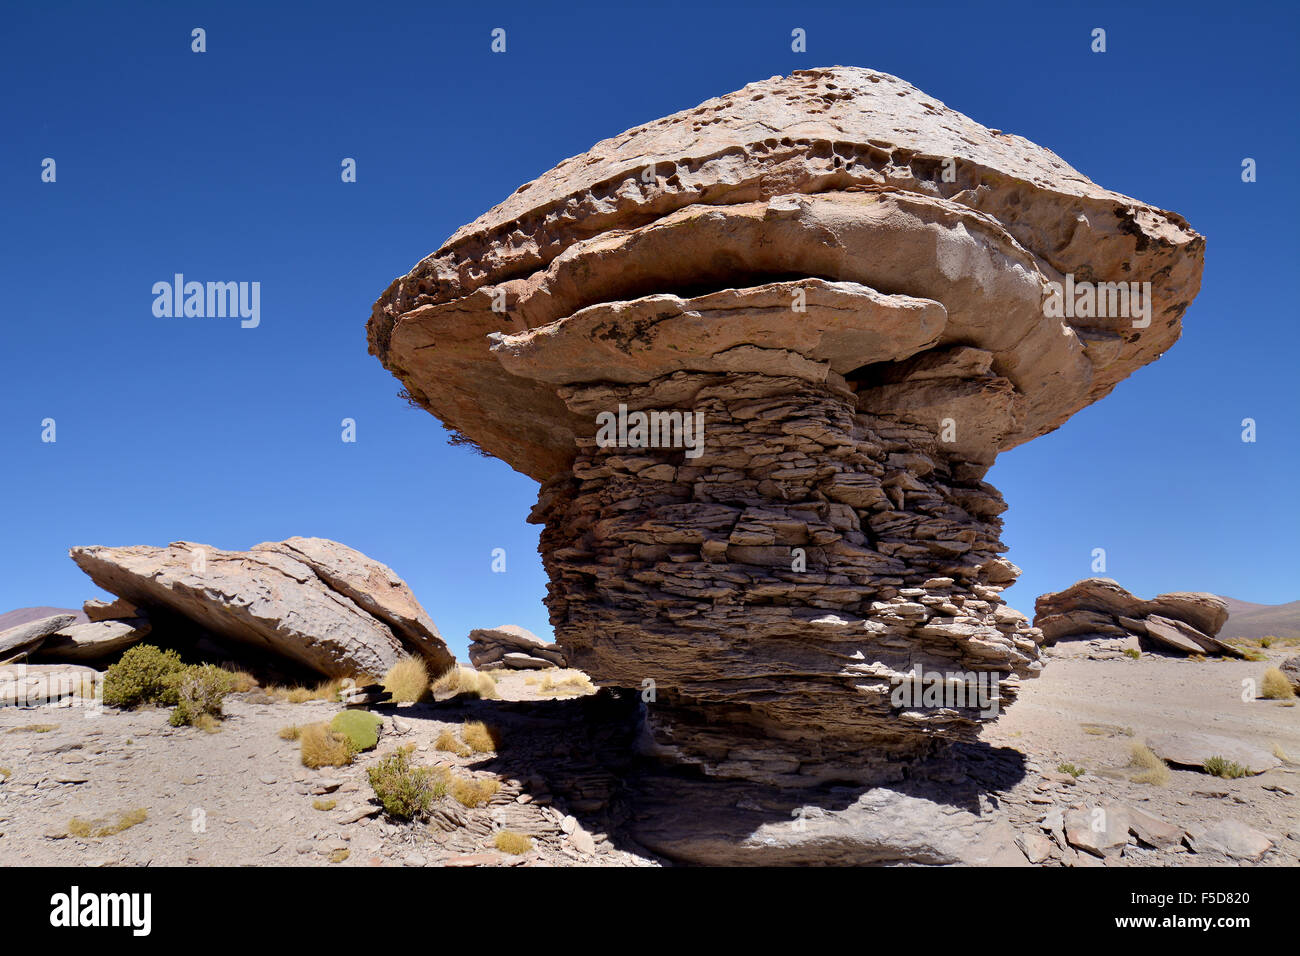 Mushroom Rocks, Felsformationen durch Winderosion erstellt, Valle de las Rocas, Uyuni, Bolivien Stockfoto